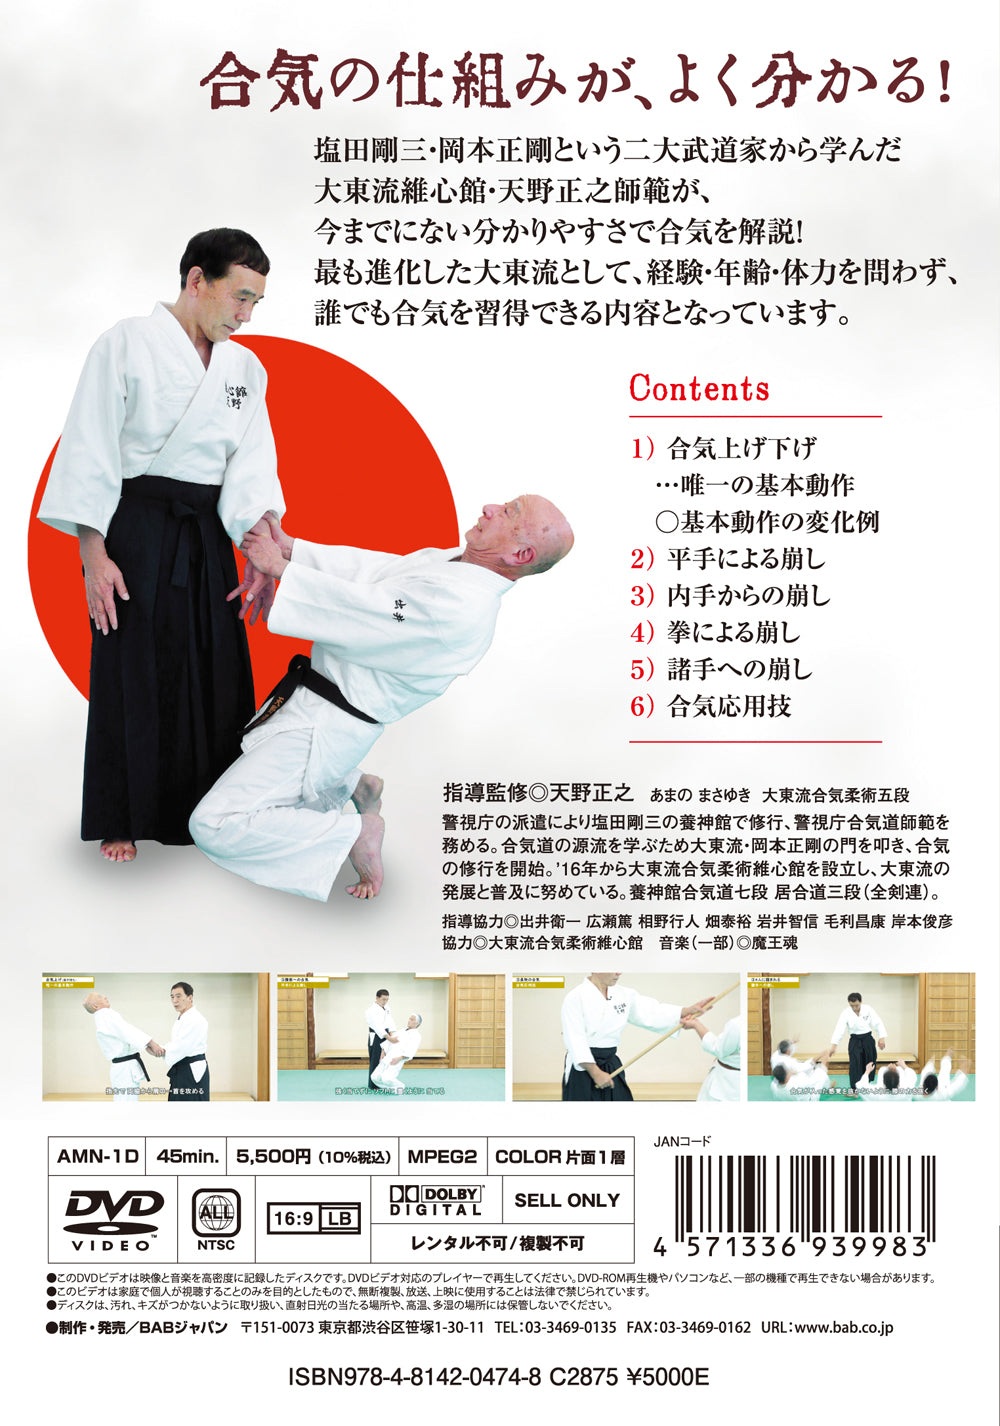 Cómo aplicar Aiki en el DVD Daito Ryu Aikijujutsu de Masayuki Amano